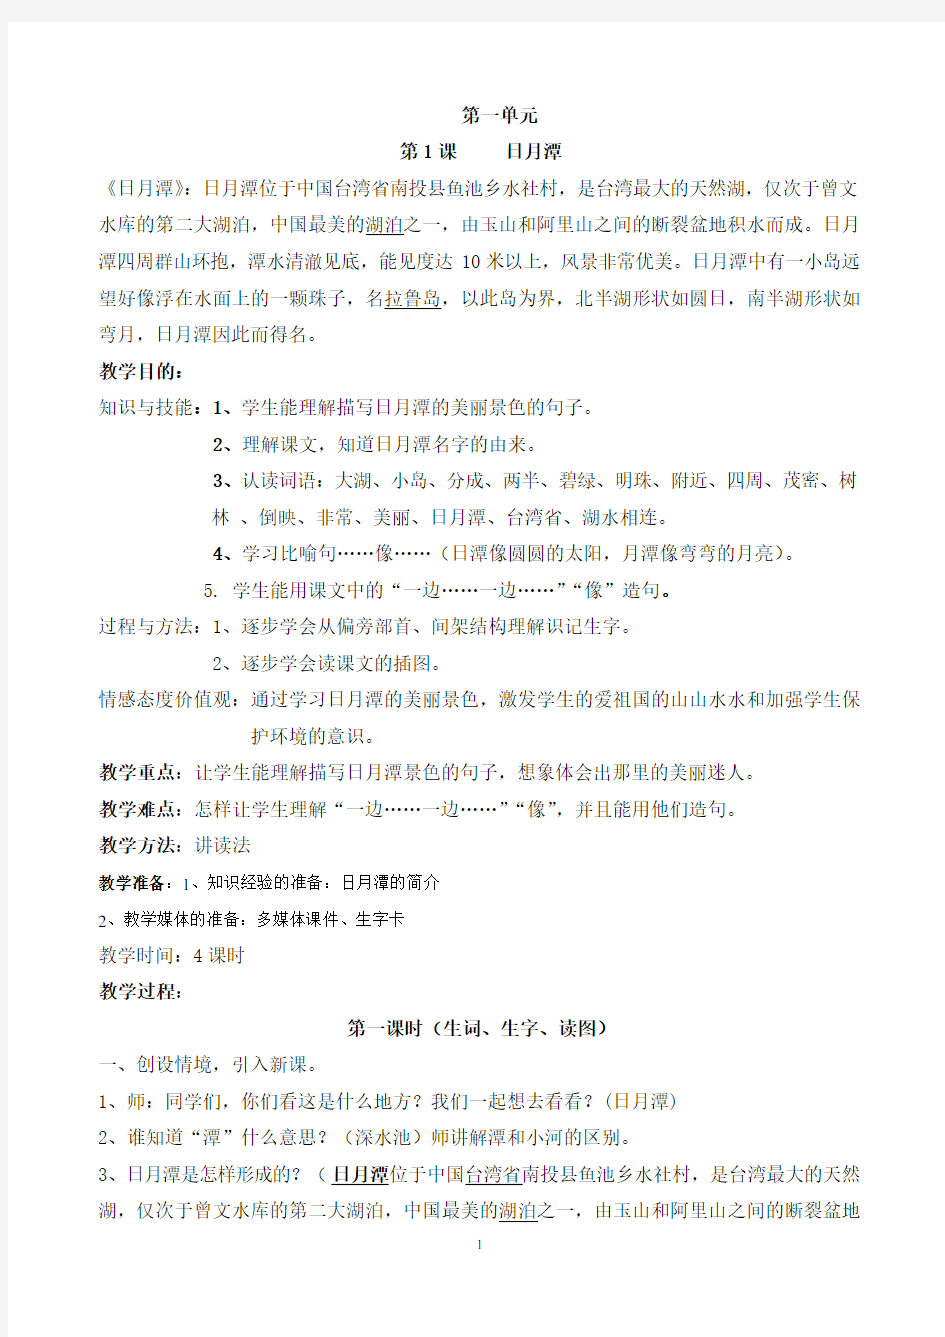 上海培智实用语文教材12册教案